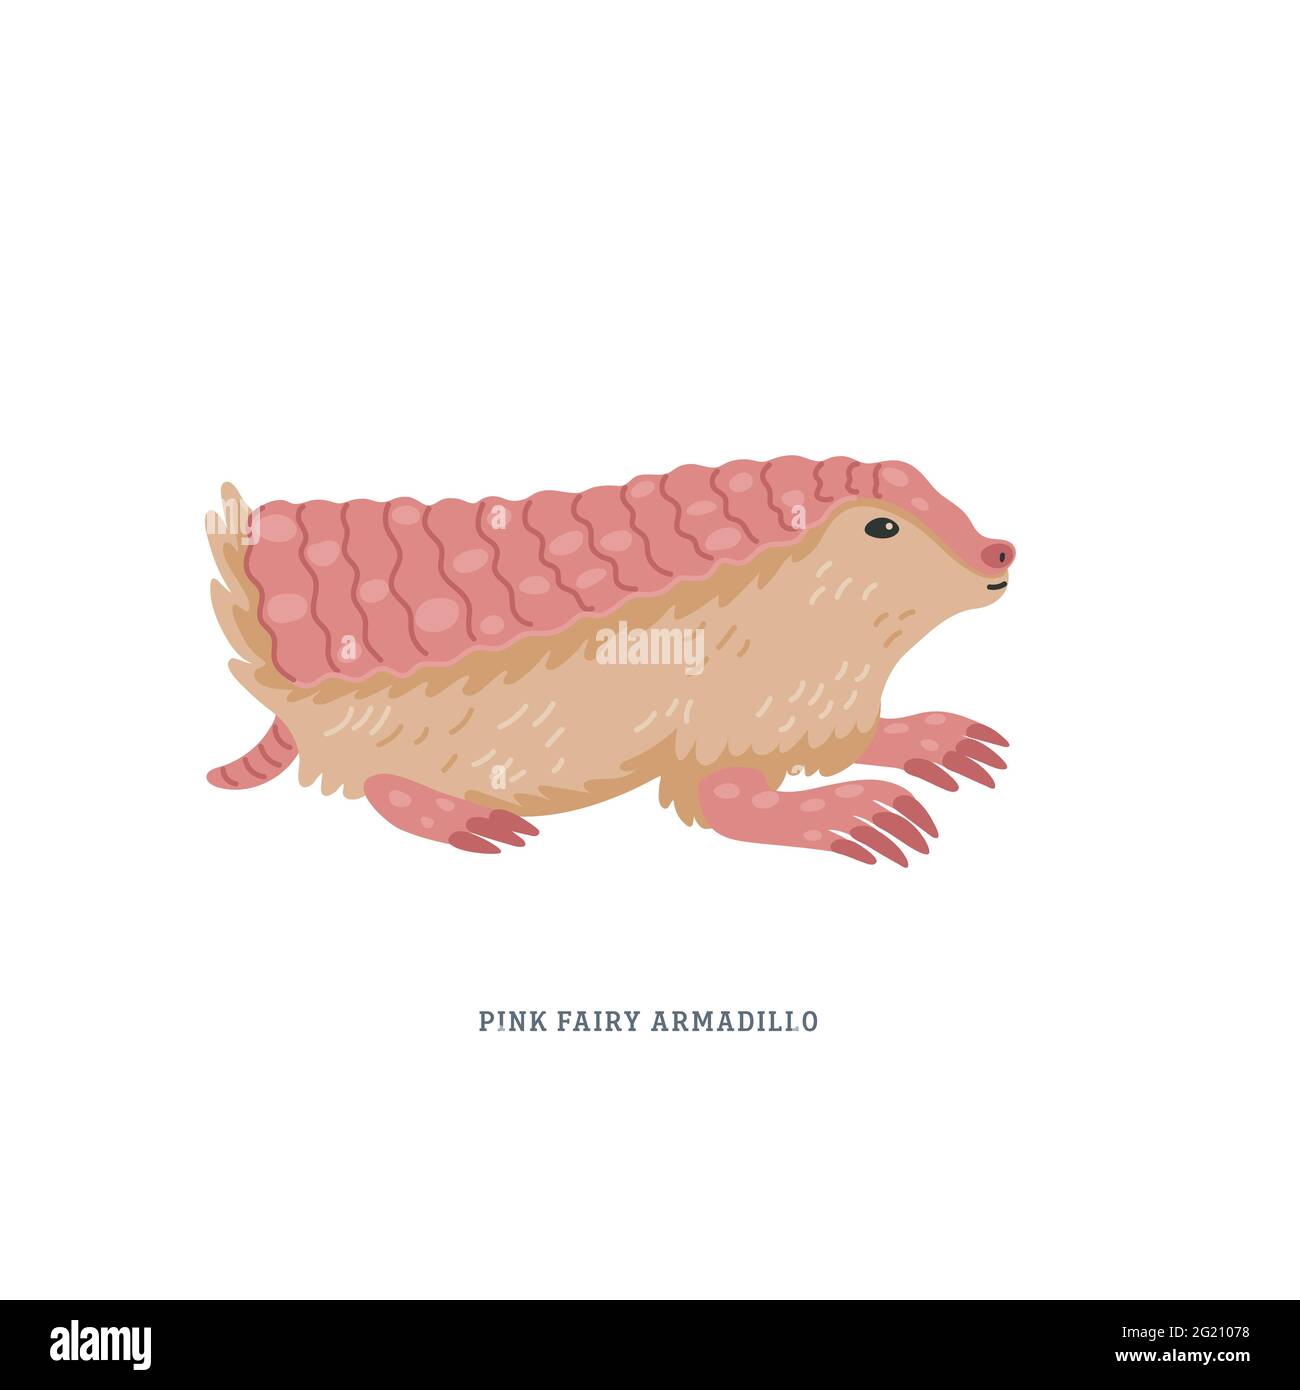 Armadillo de fée rose ou Chlamyphorus truncatus, ou pichiciego - le plus petit armadillo endémique au centre de l'Argentine. Illustration vectorielle simple et colorée i Illustration de Vecteur